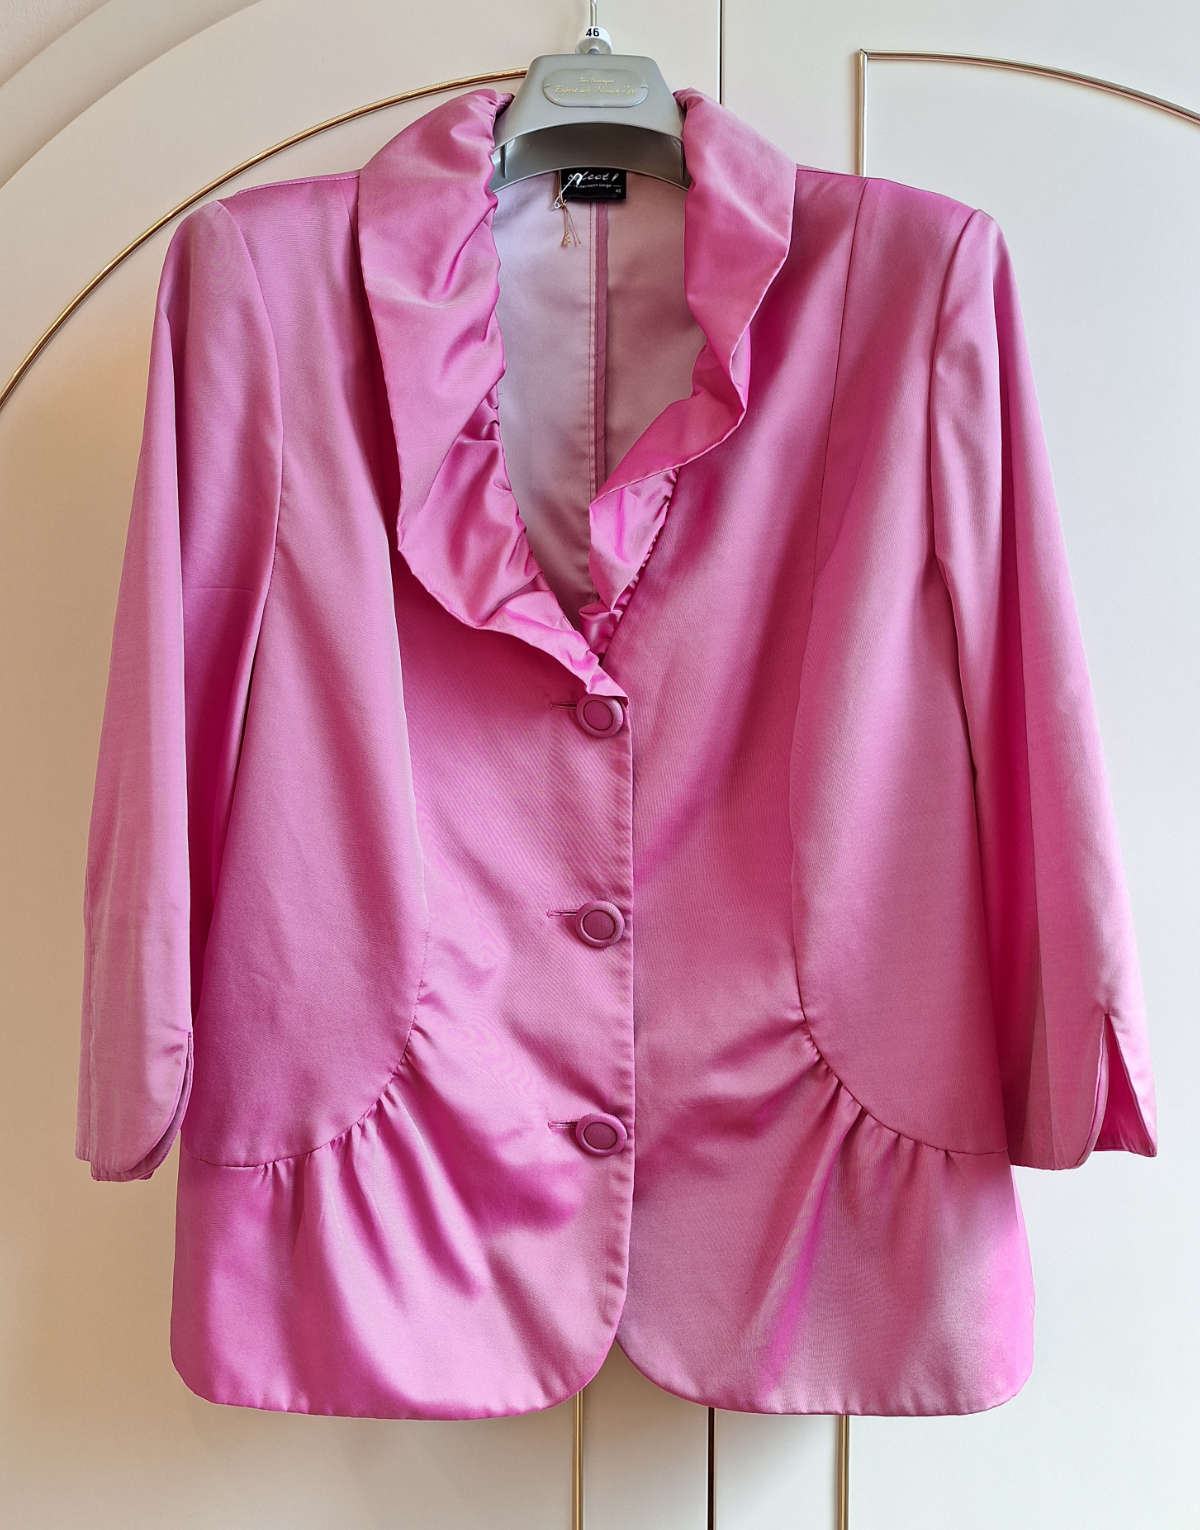 Select Damen-Blazer, in pink, Größe 46, mit Rüschen, Dreiviertelarm, Frontalansicht.